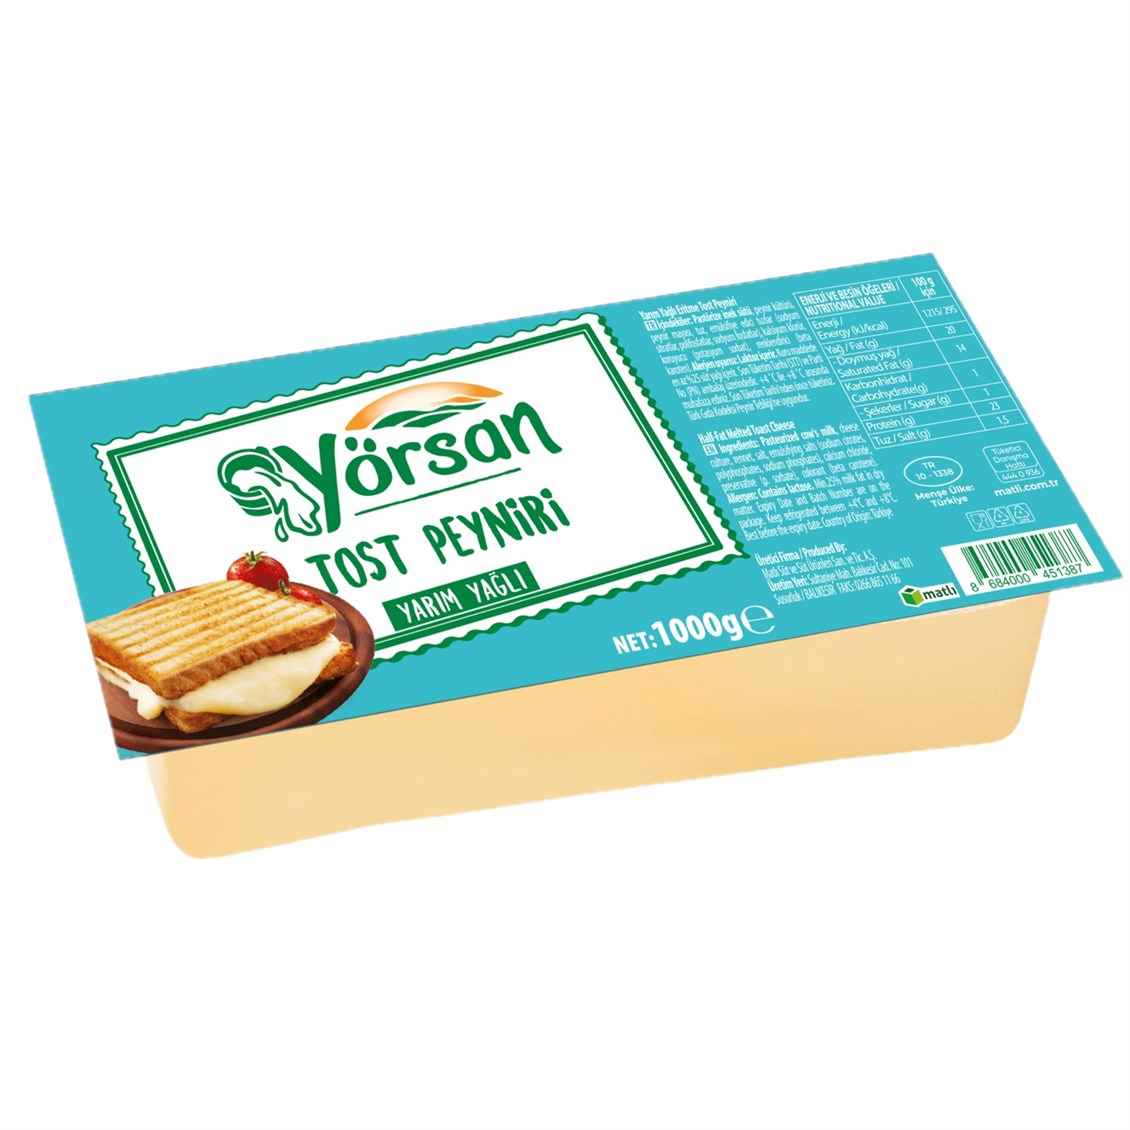 S Tost Peyniri Yörsan kg - Onur Market